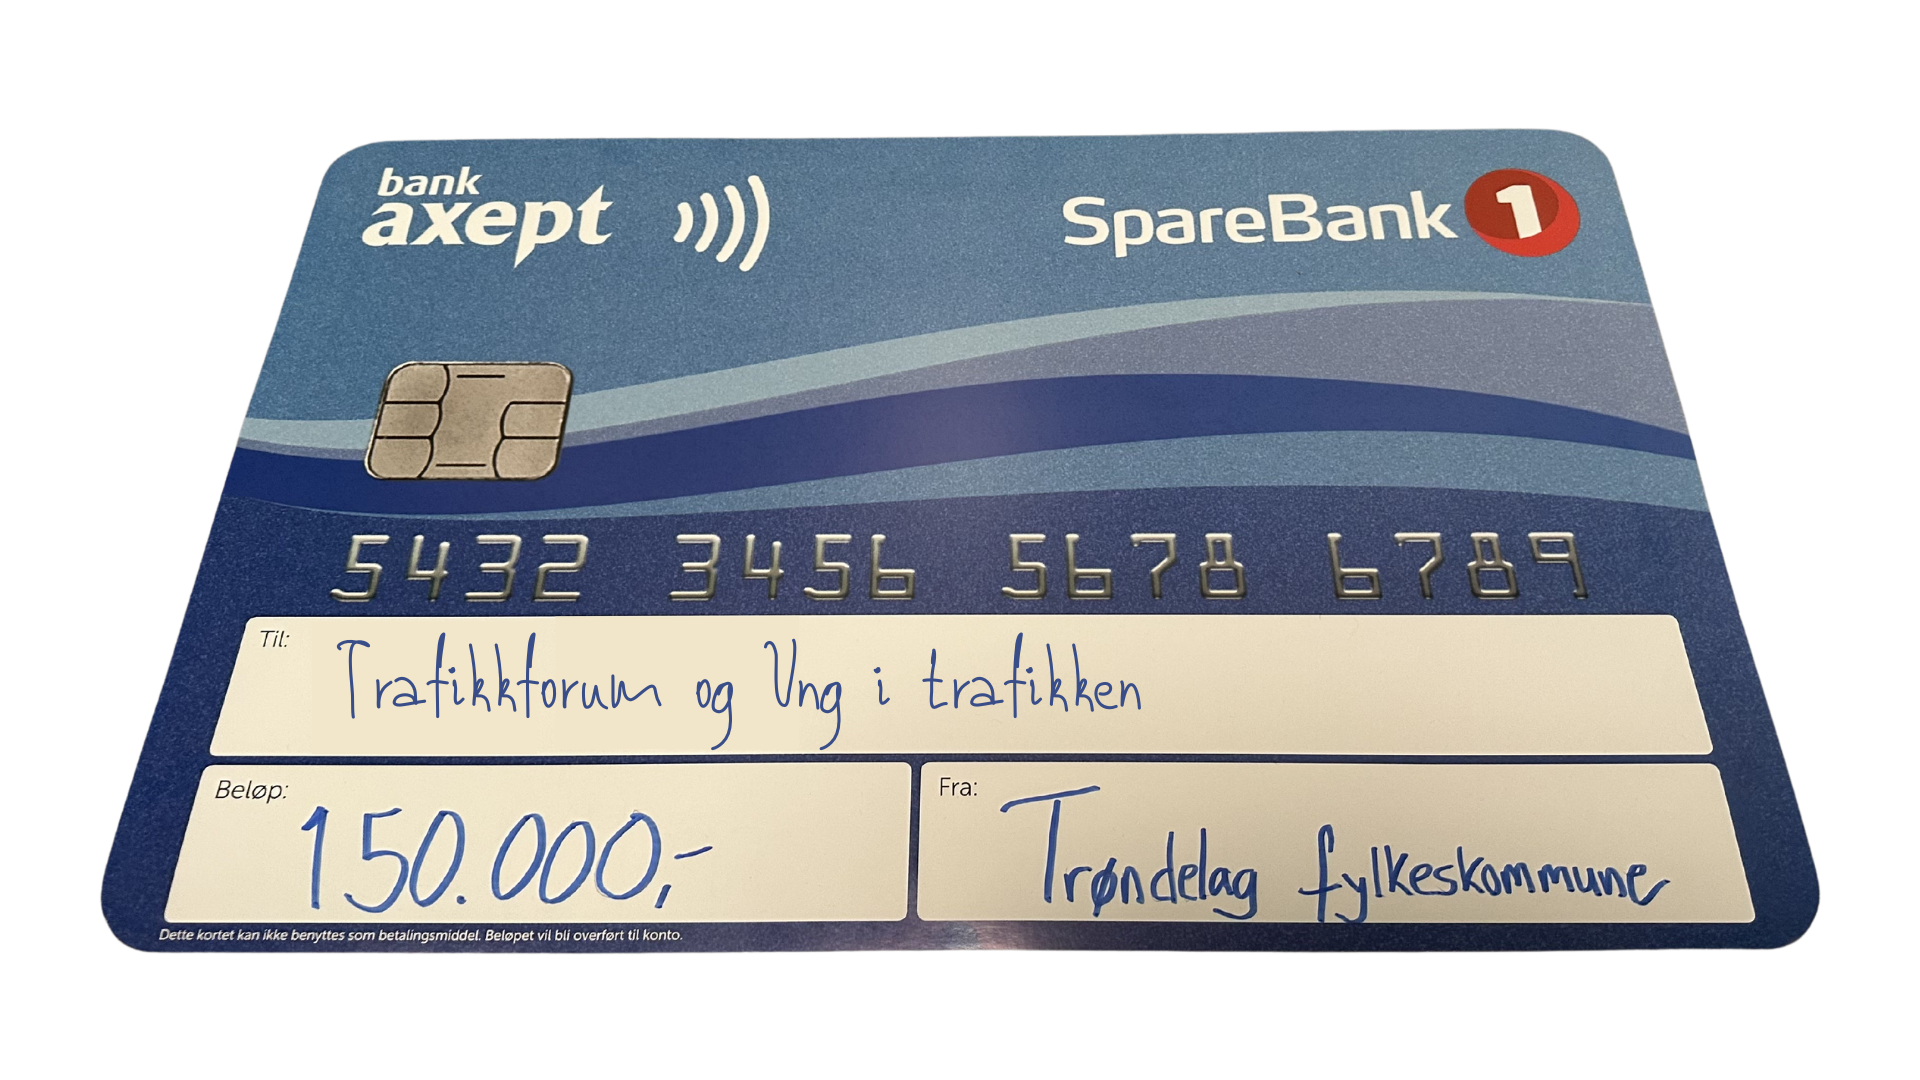 Bilde av sparebank 1 sjekk hvor det står at Trafikkforum og Ung i trafikken har vunnet 150 000 kr av Trnødelag fylkeskommune